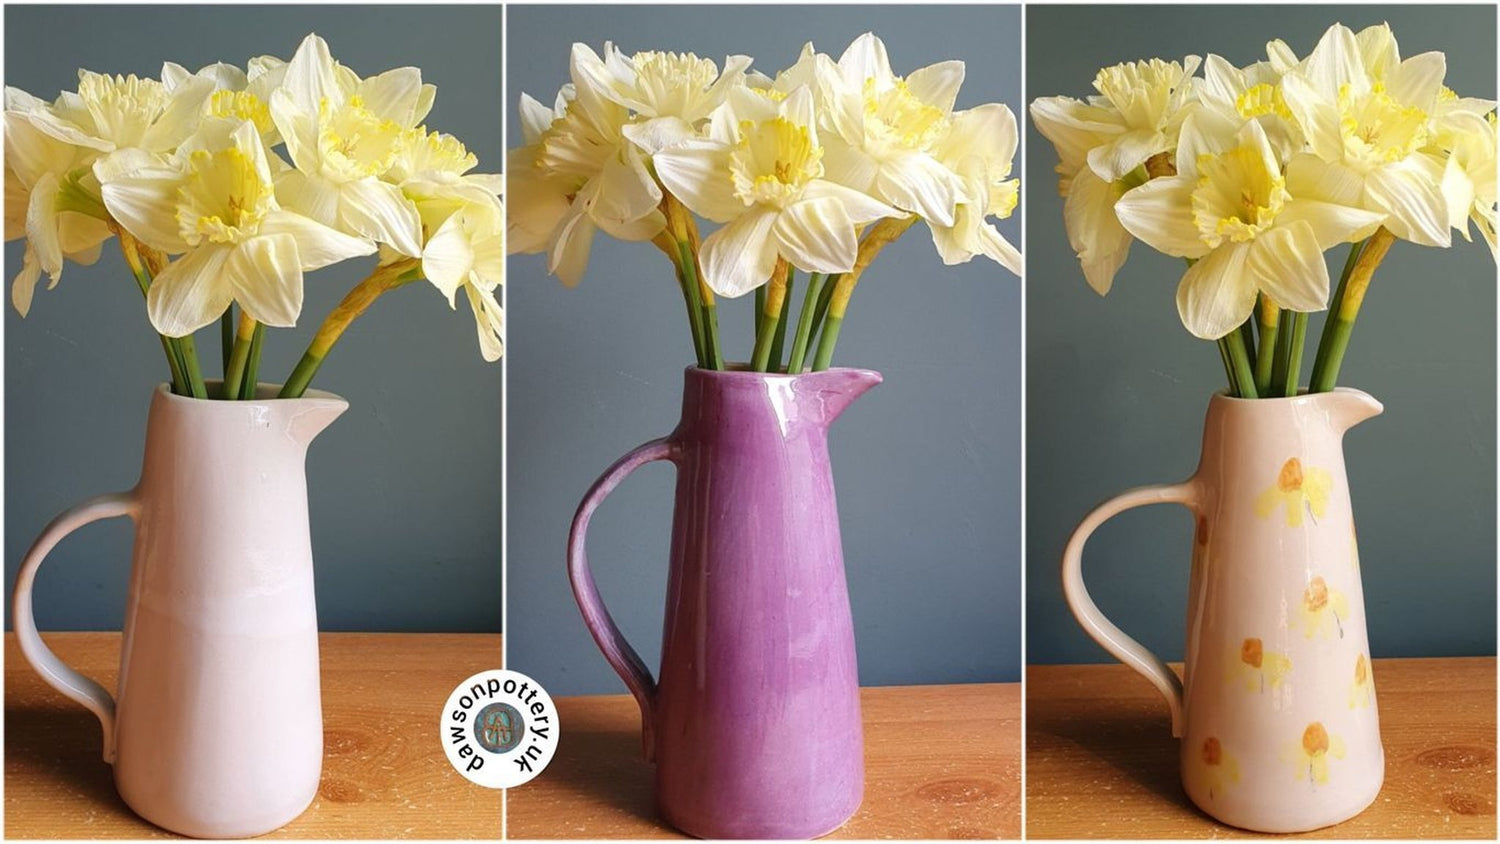 Flowers in handmade jugs image